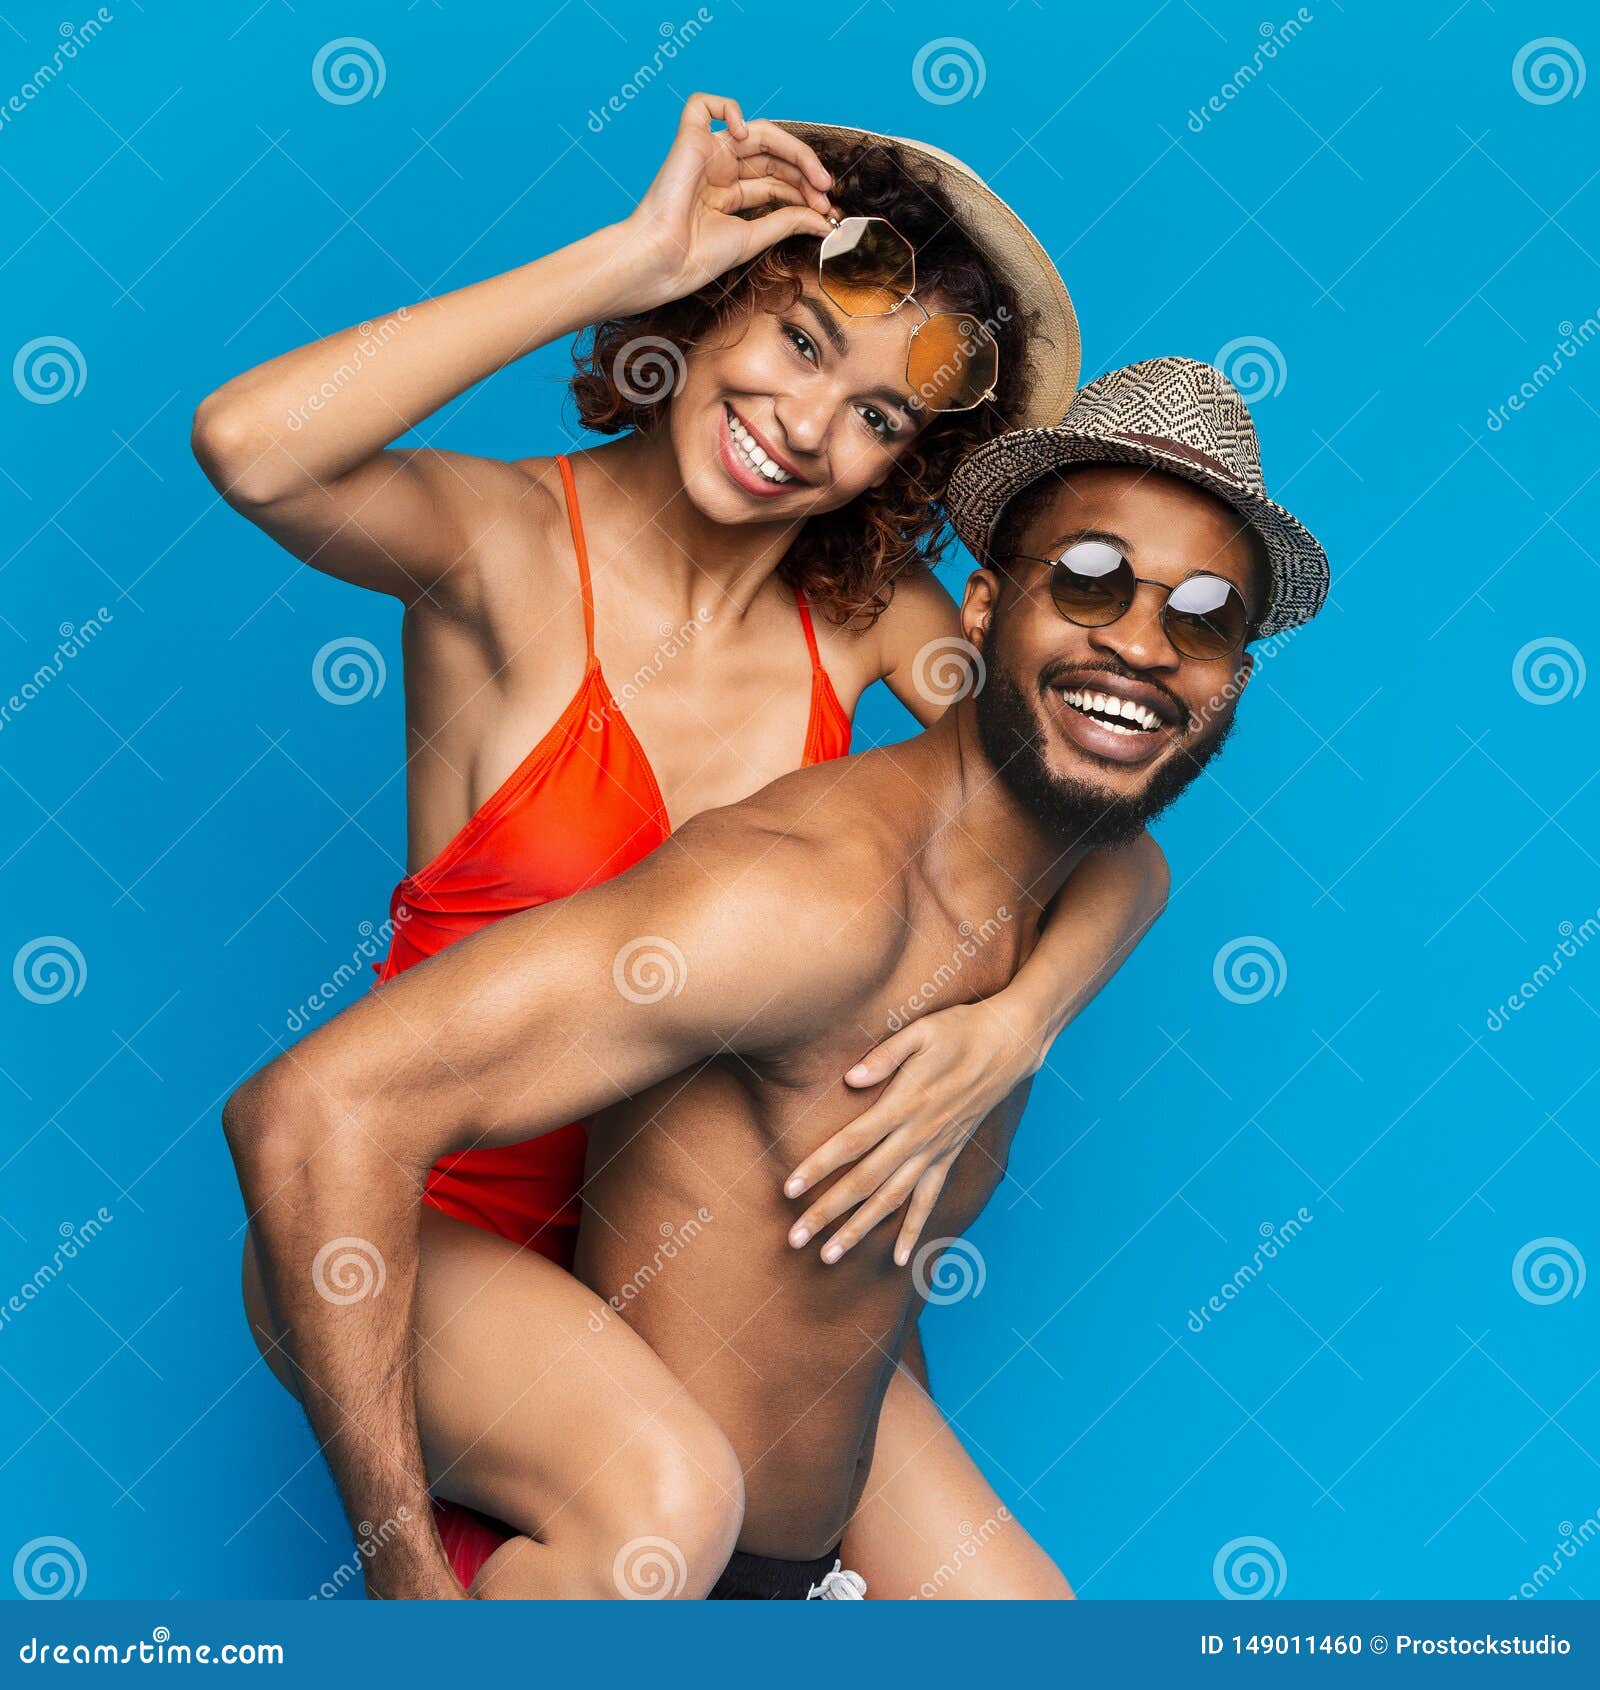 Girlfriend in black bikini riding on her man